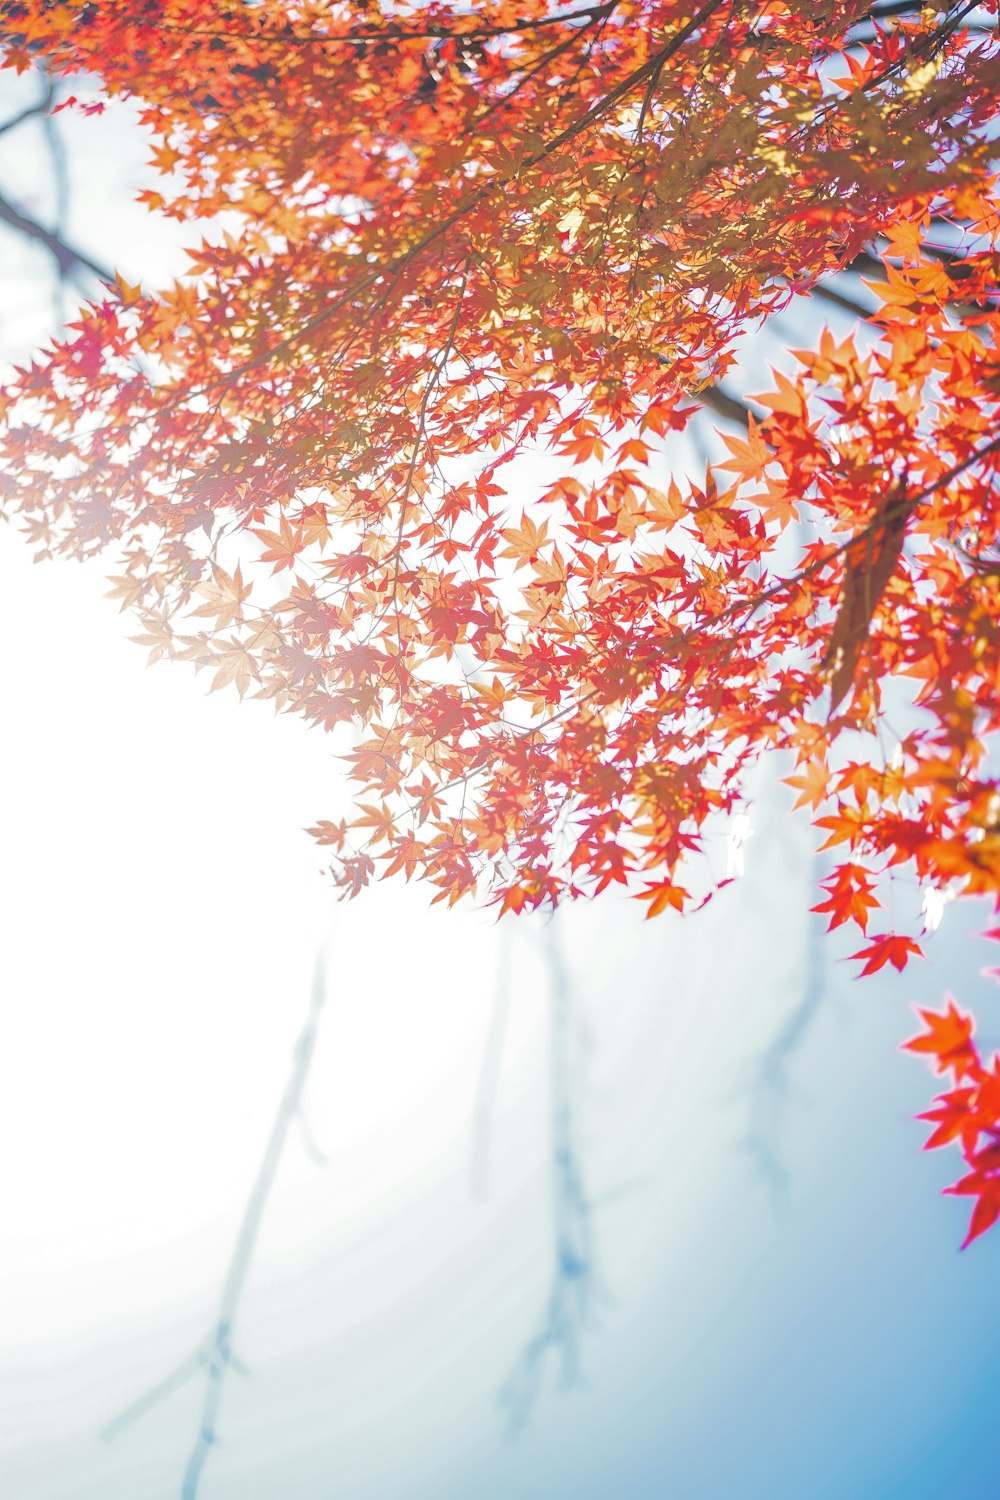 Die Sonne scheint durch die Blätter eines Baumes